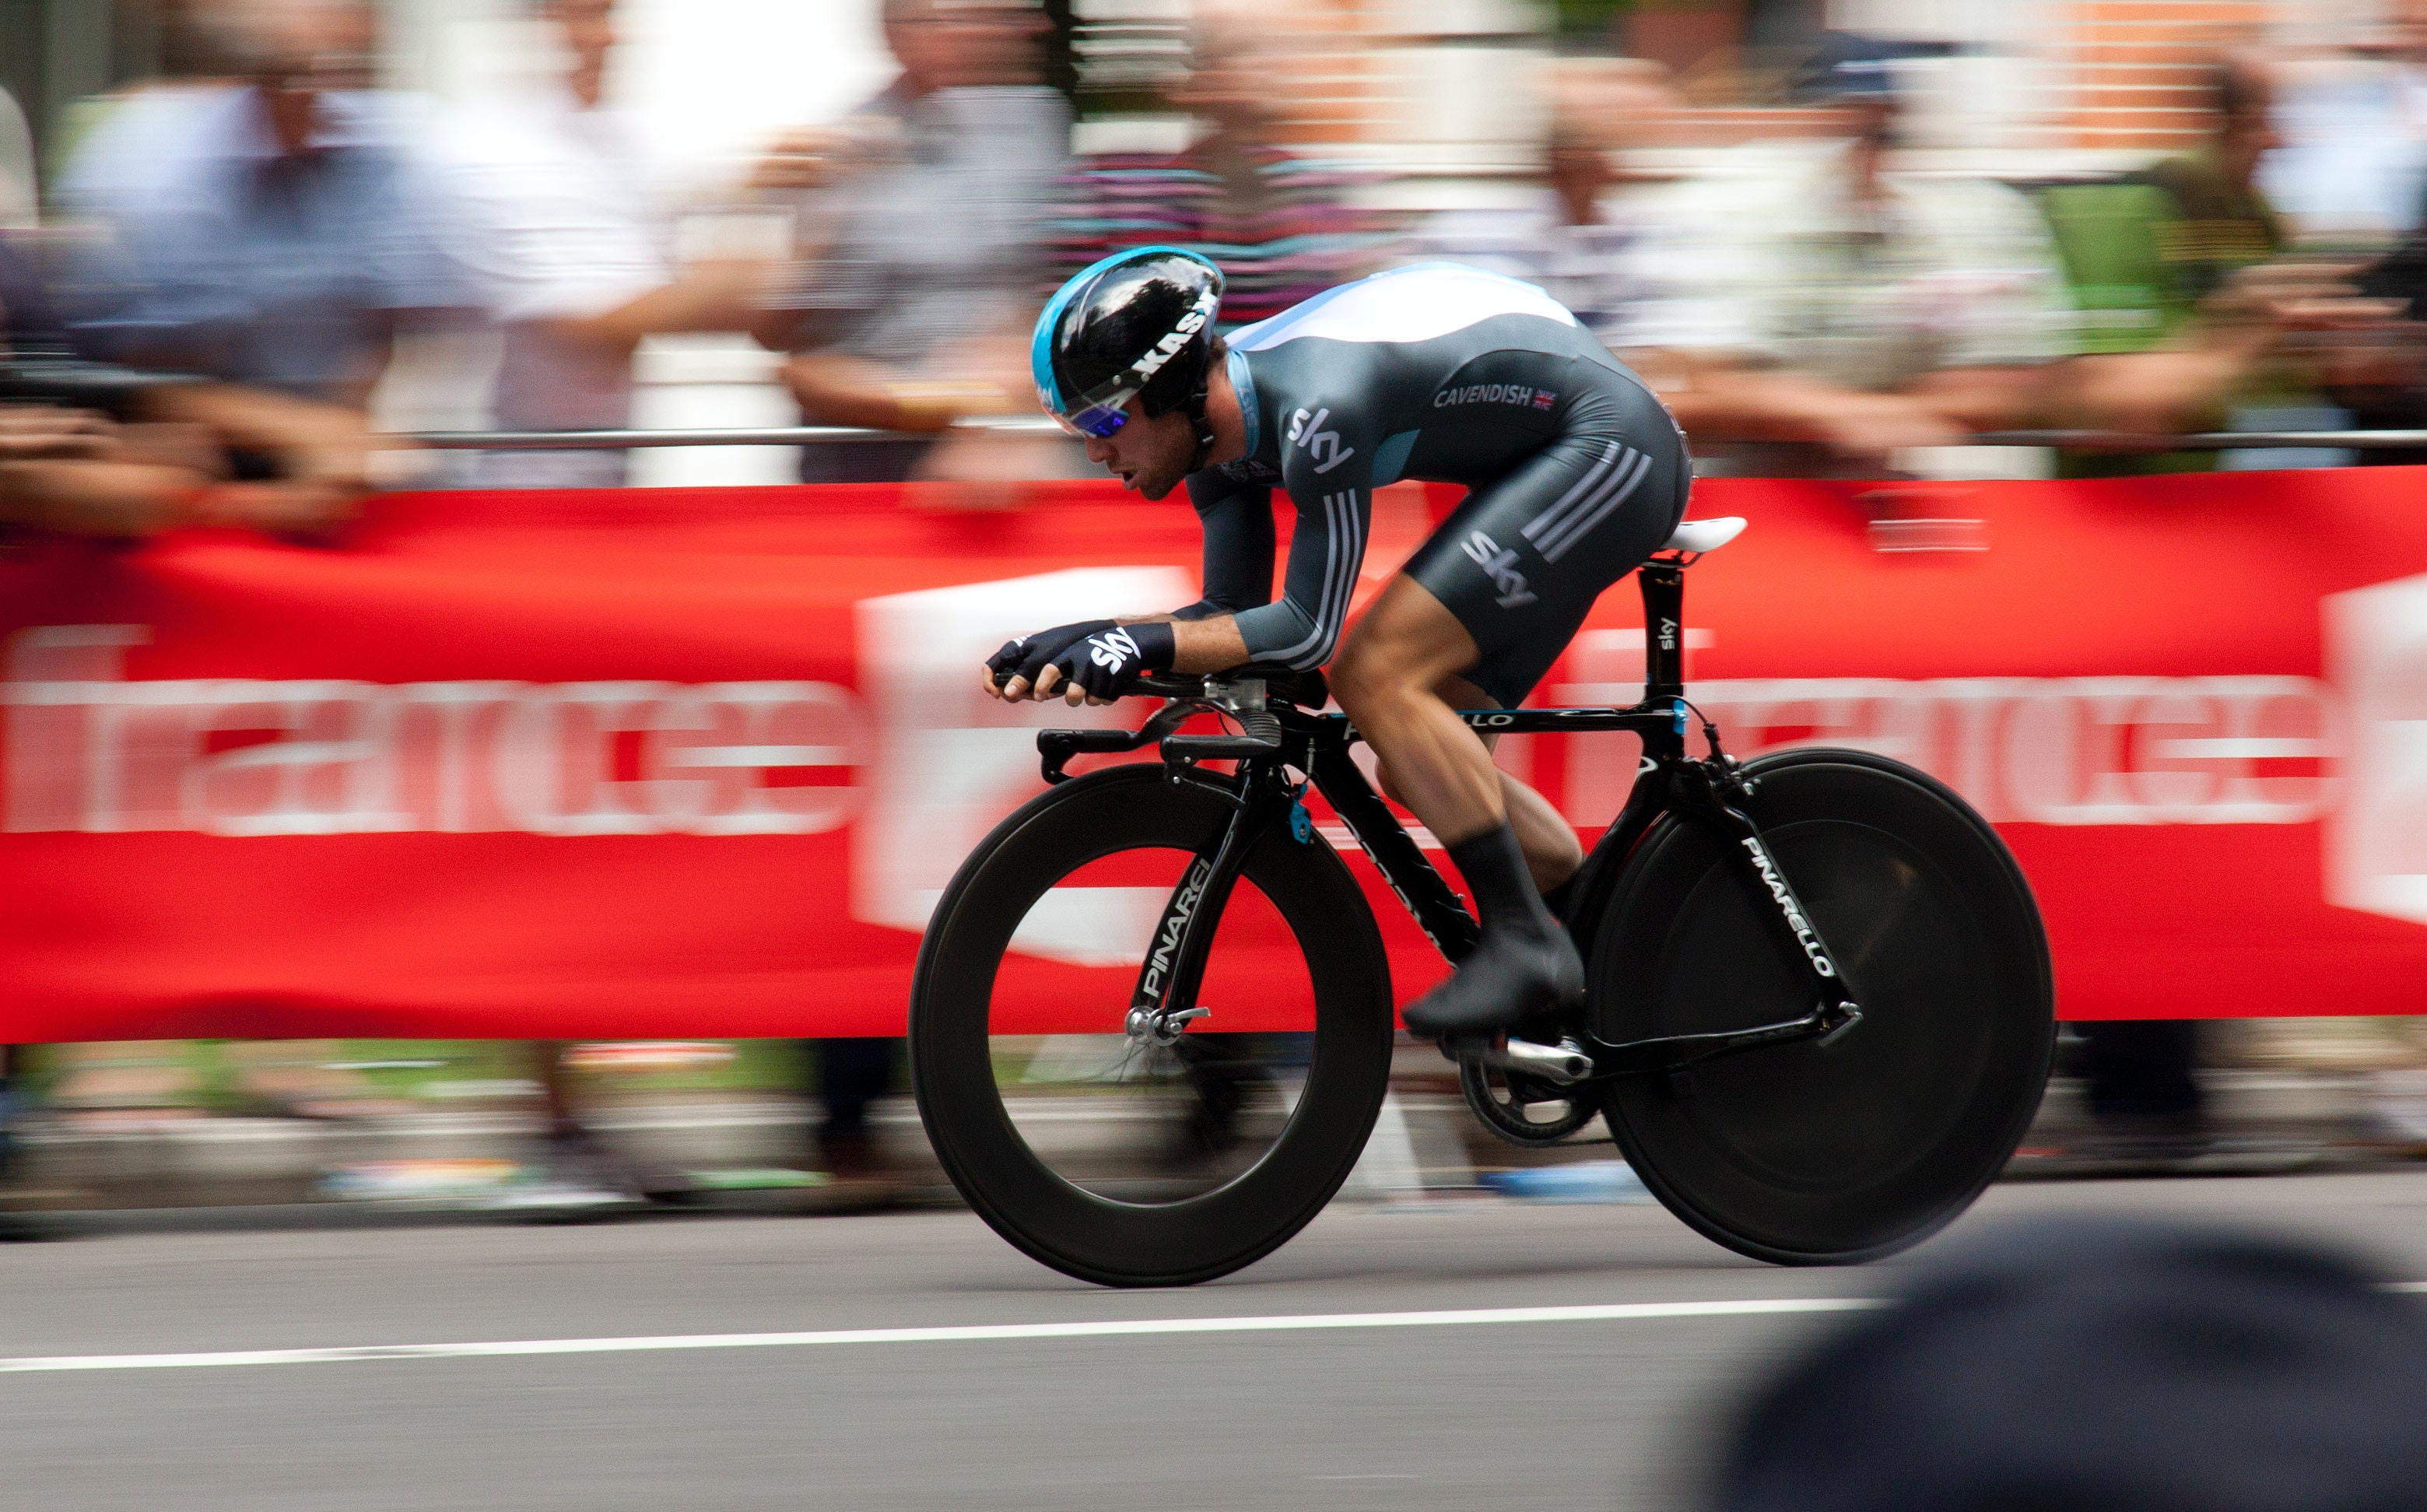 Ciclista em alta velocidade. Foto de Chris Peeters, Pexels.